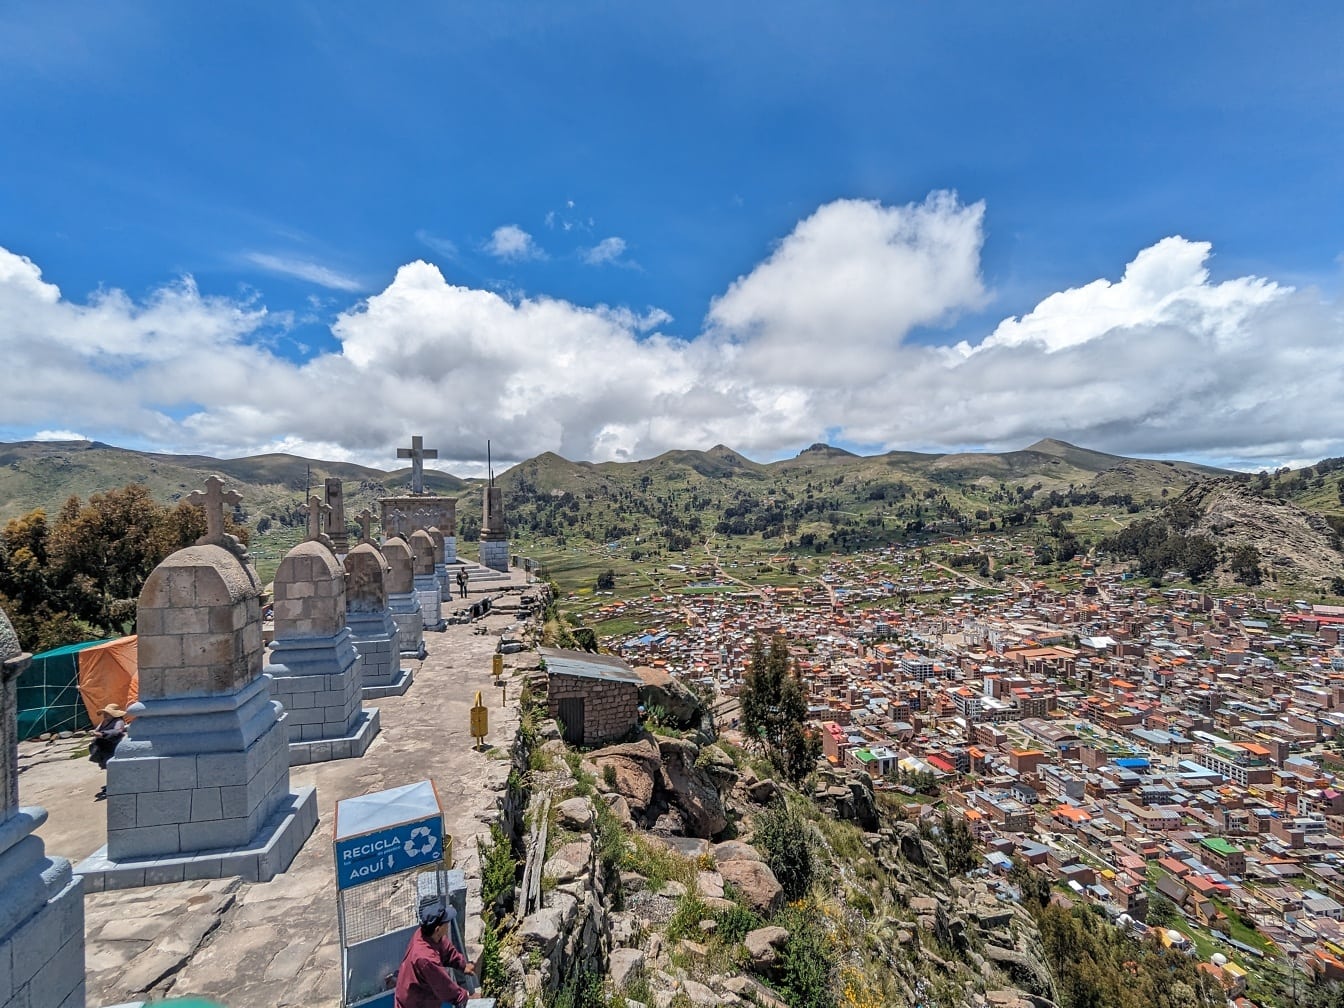 Cảnh quan thành phố nhìn từ đồi Calvary với nghĩa trang trên đỉnh đồi